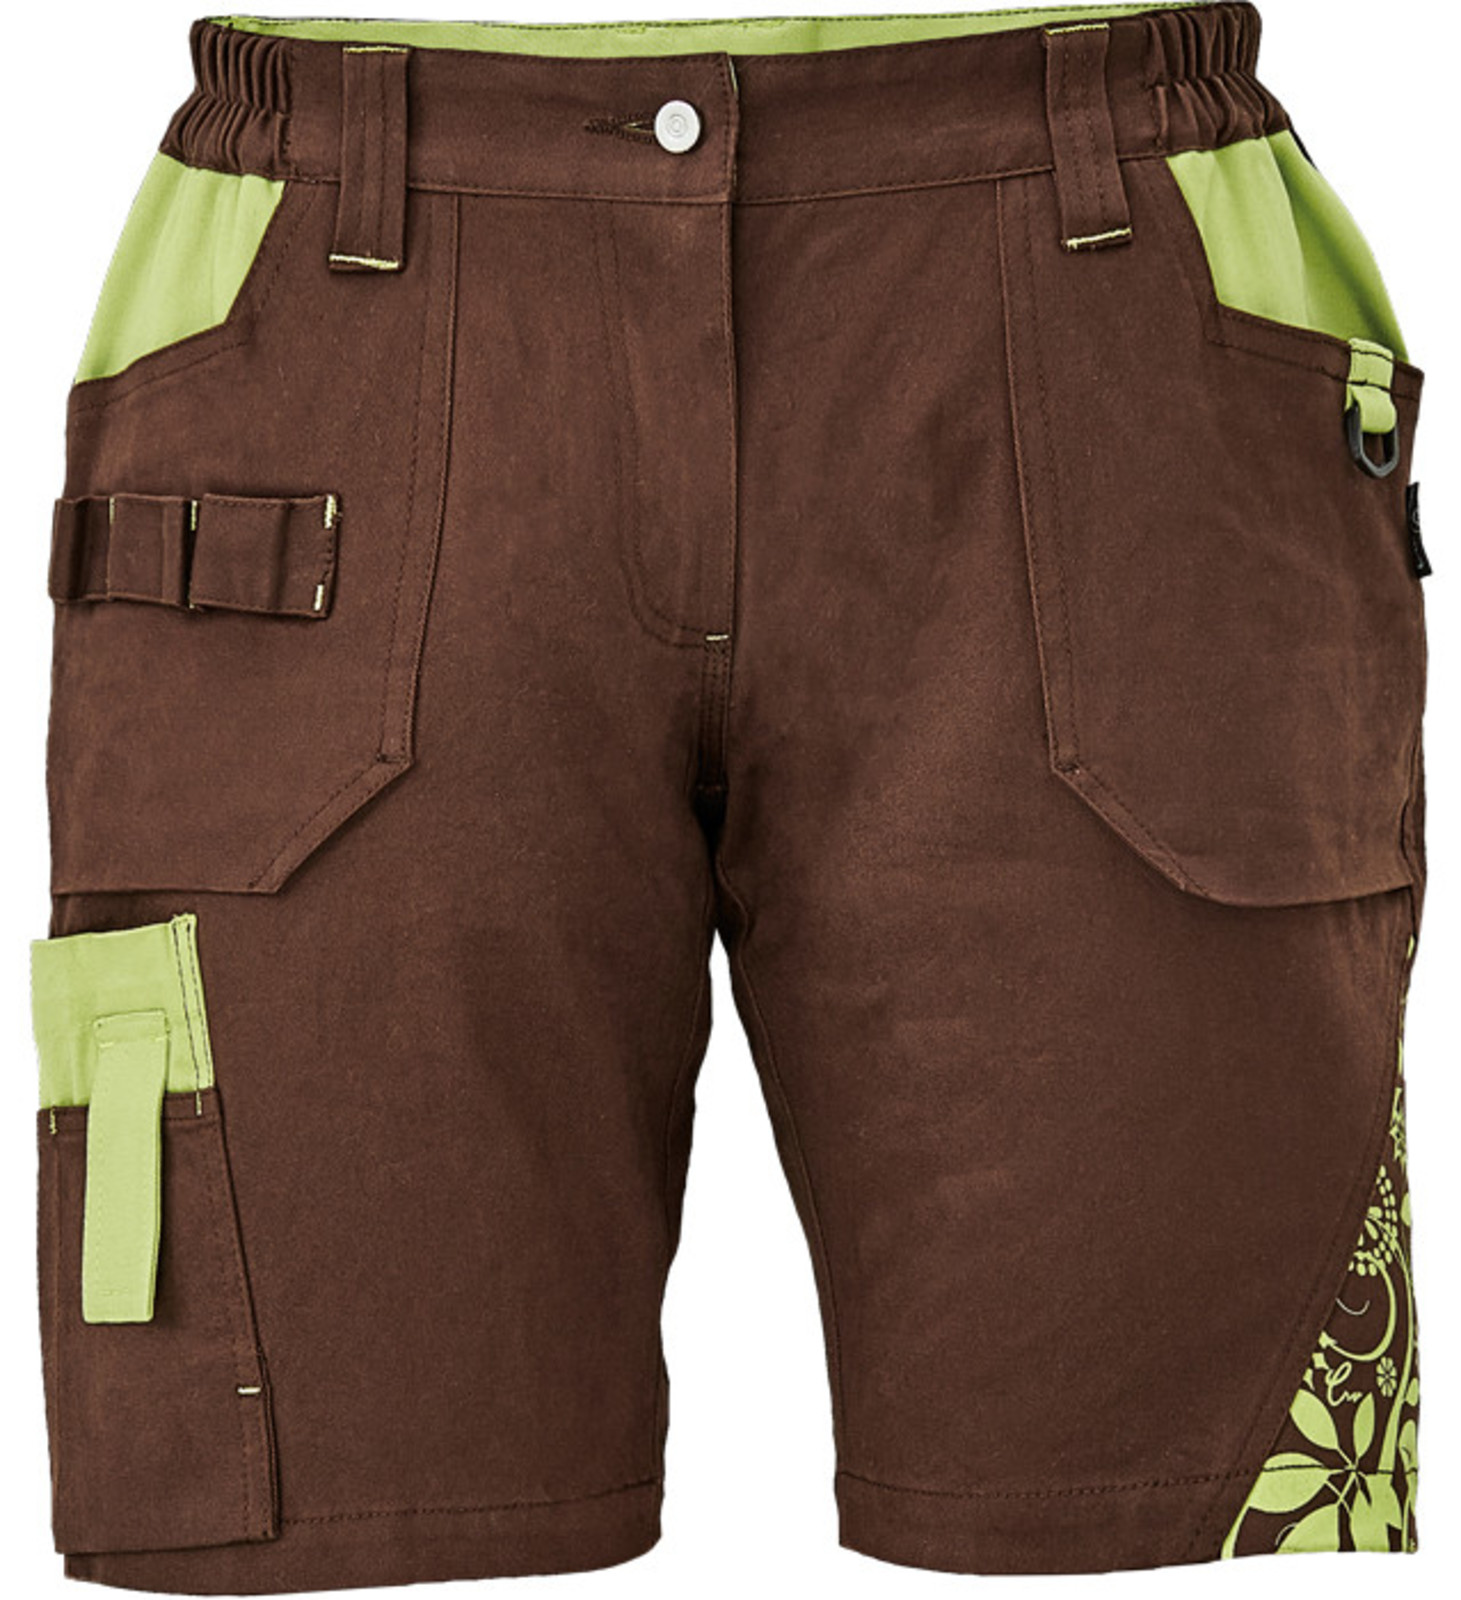 Dámske pracovné šortky Cerva Yowie - veľkosť: 46, farba: hnedá/zelená